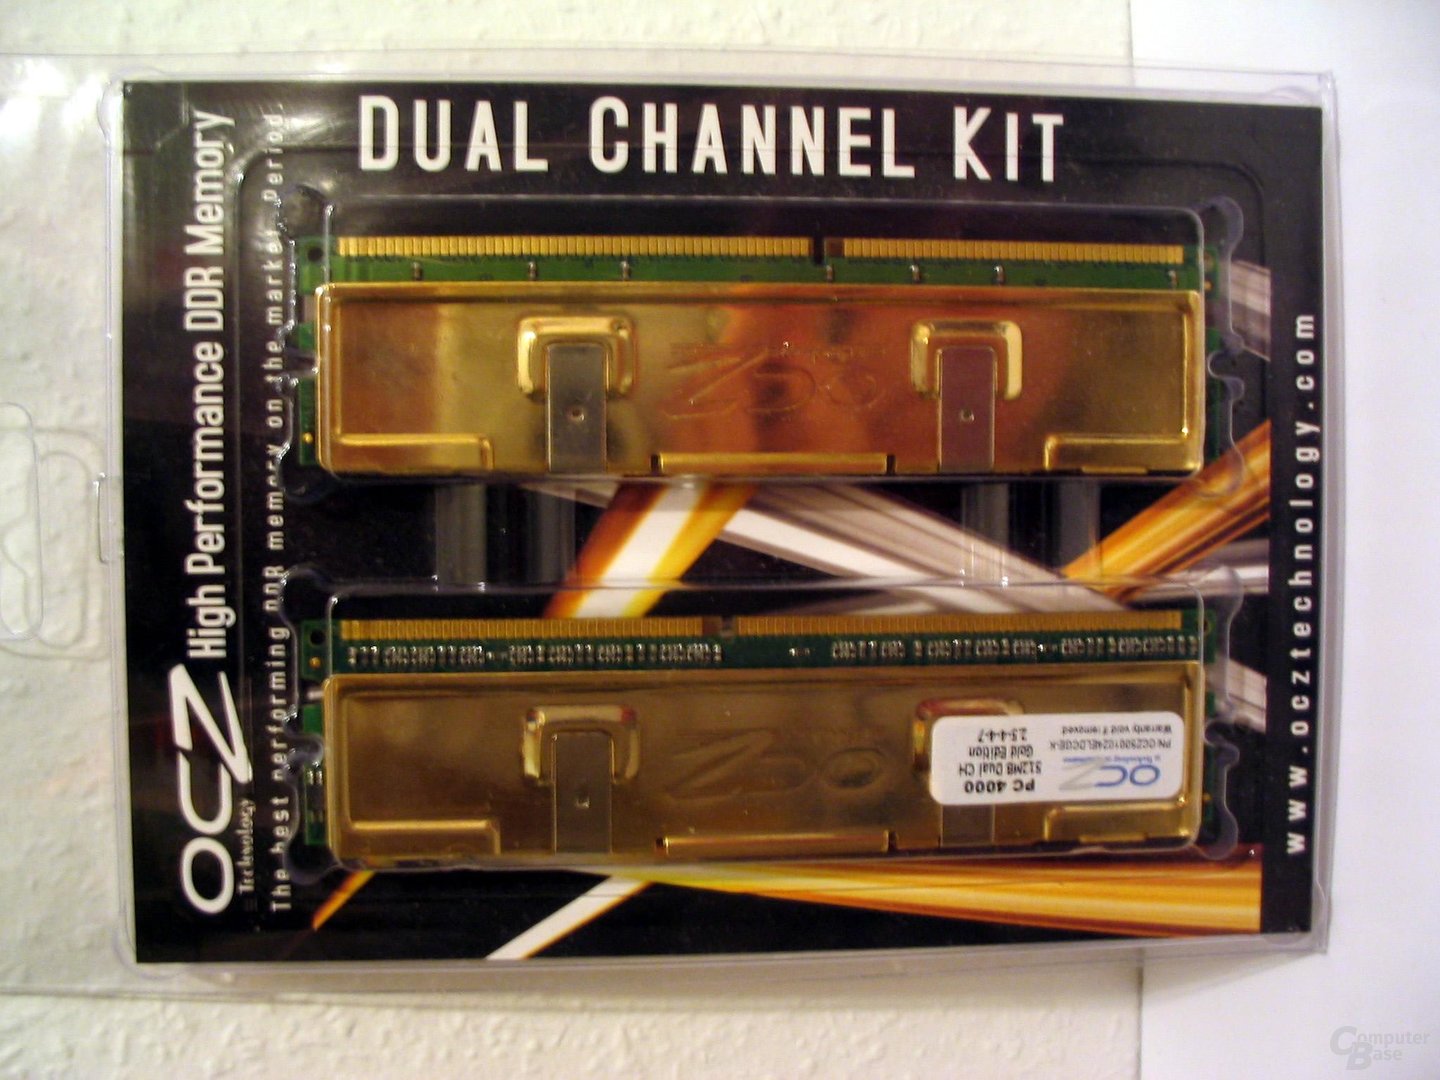 Dual-Channel-Kit natürlich auch von OCZ